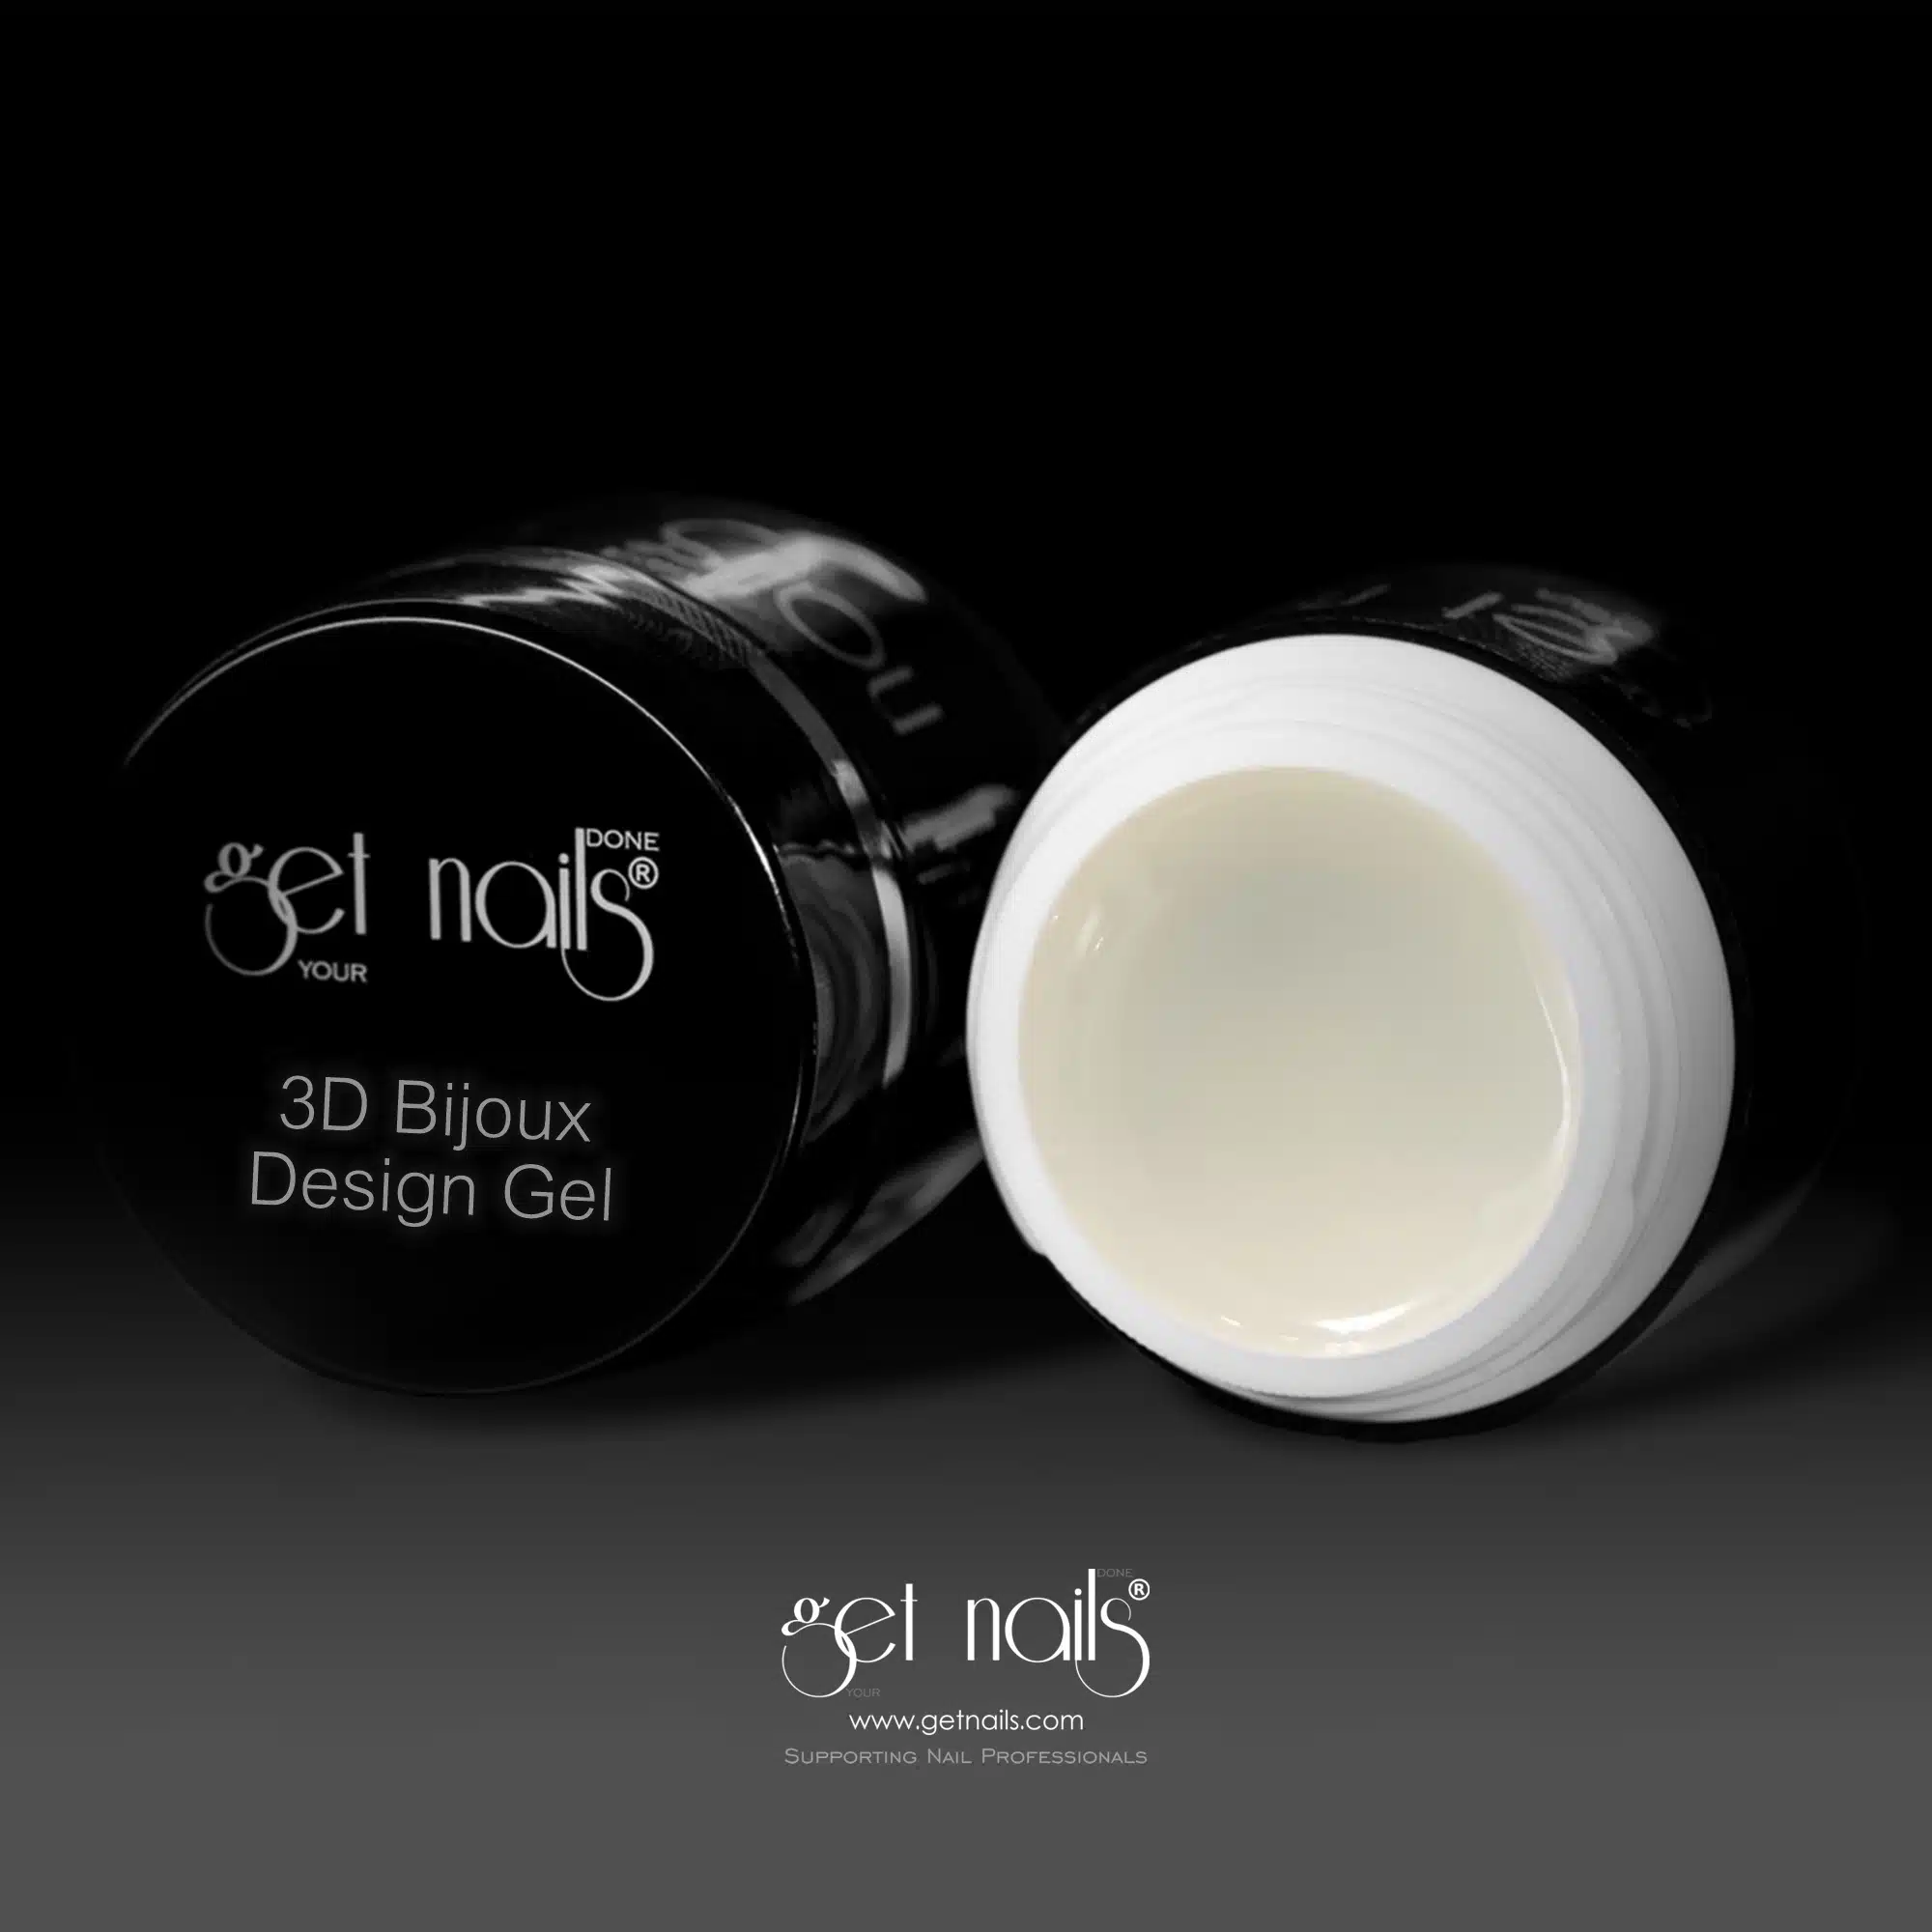 Get Nails Austria - 3D Bijoux Design Gel 5g